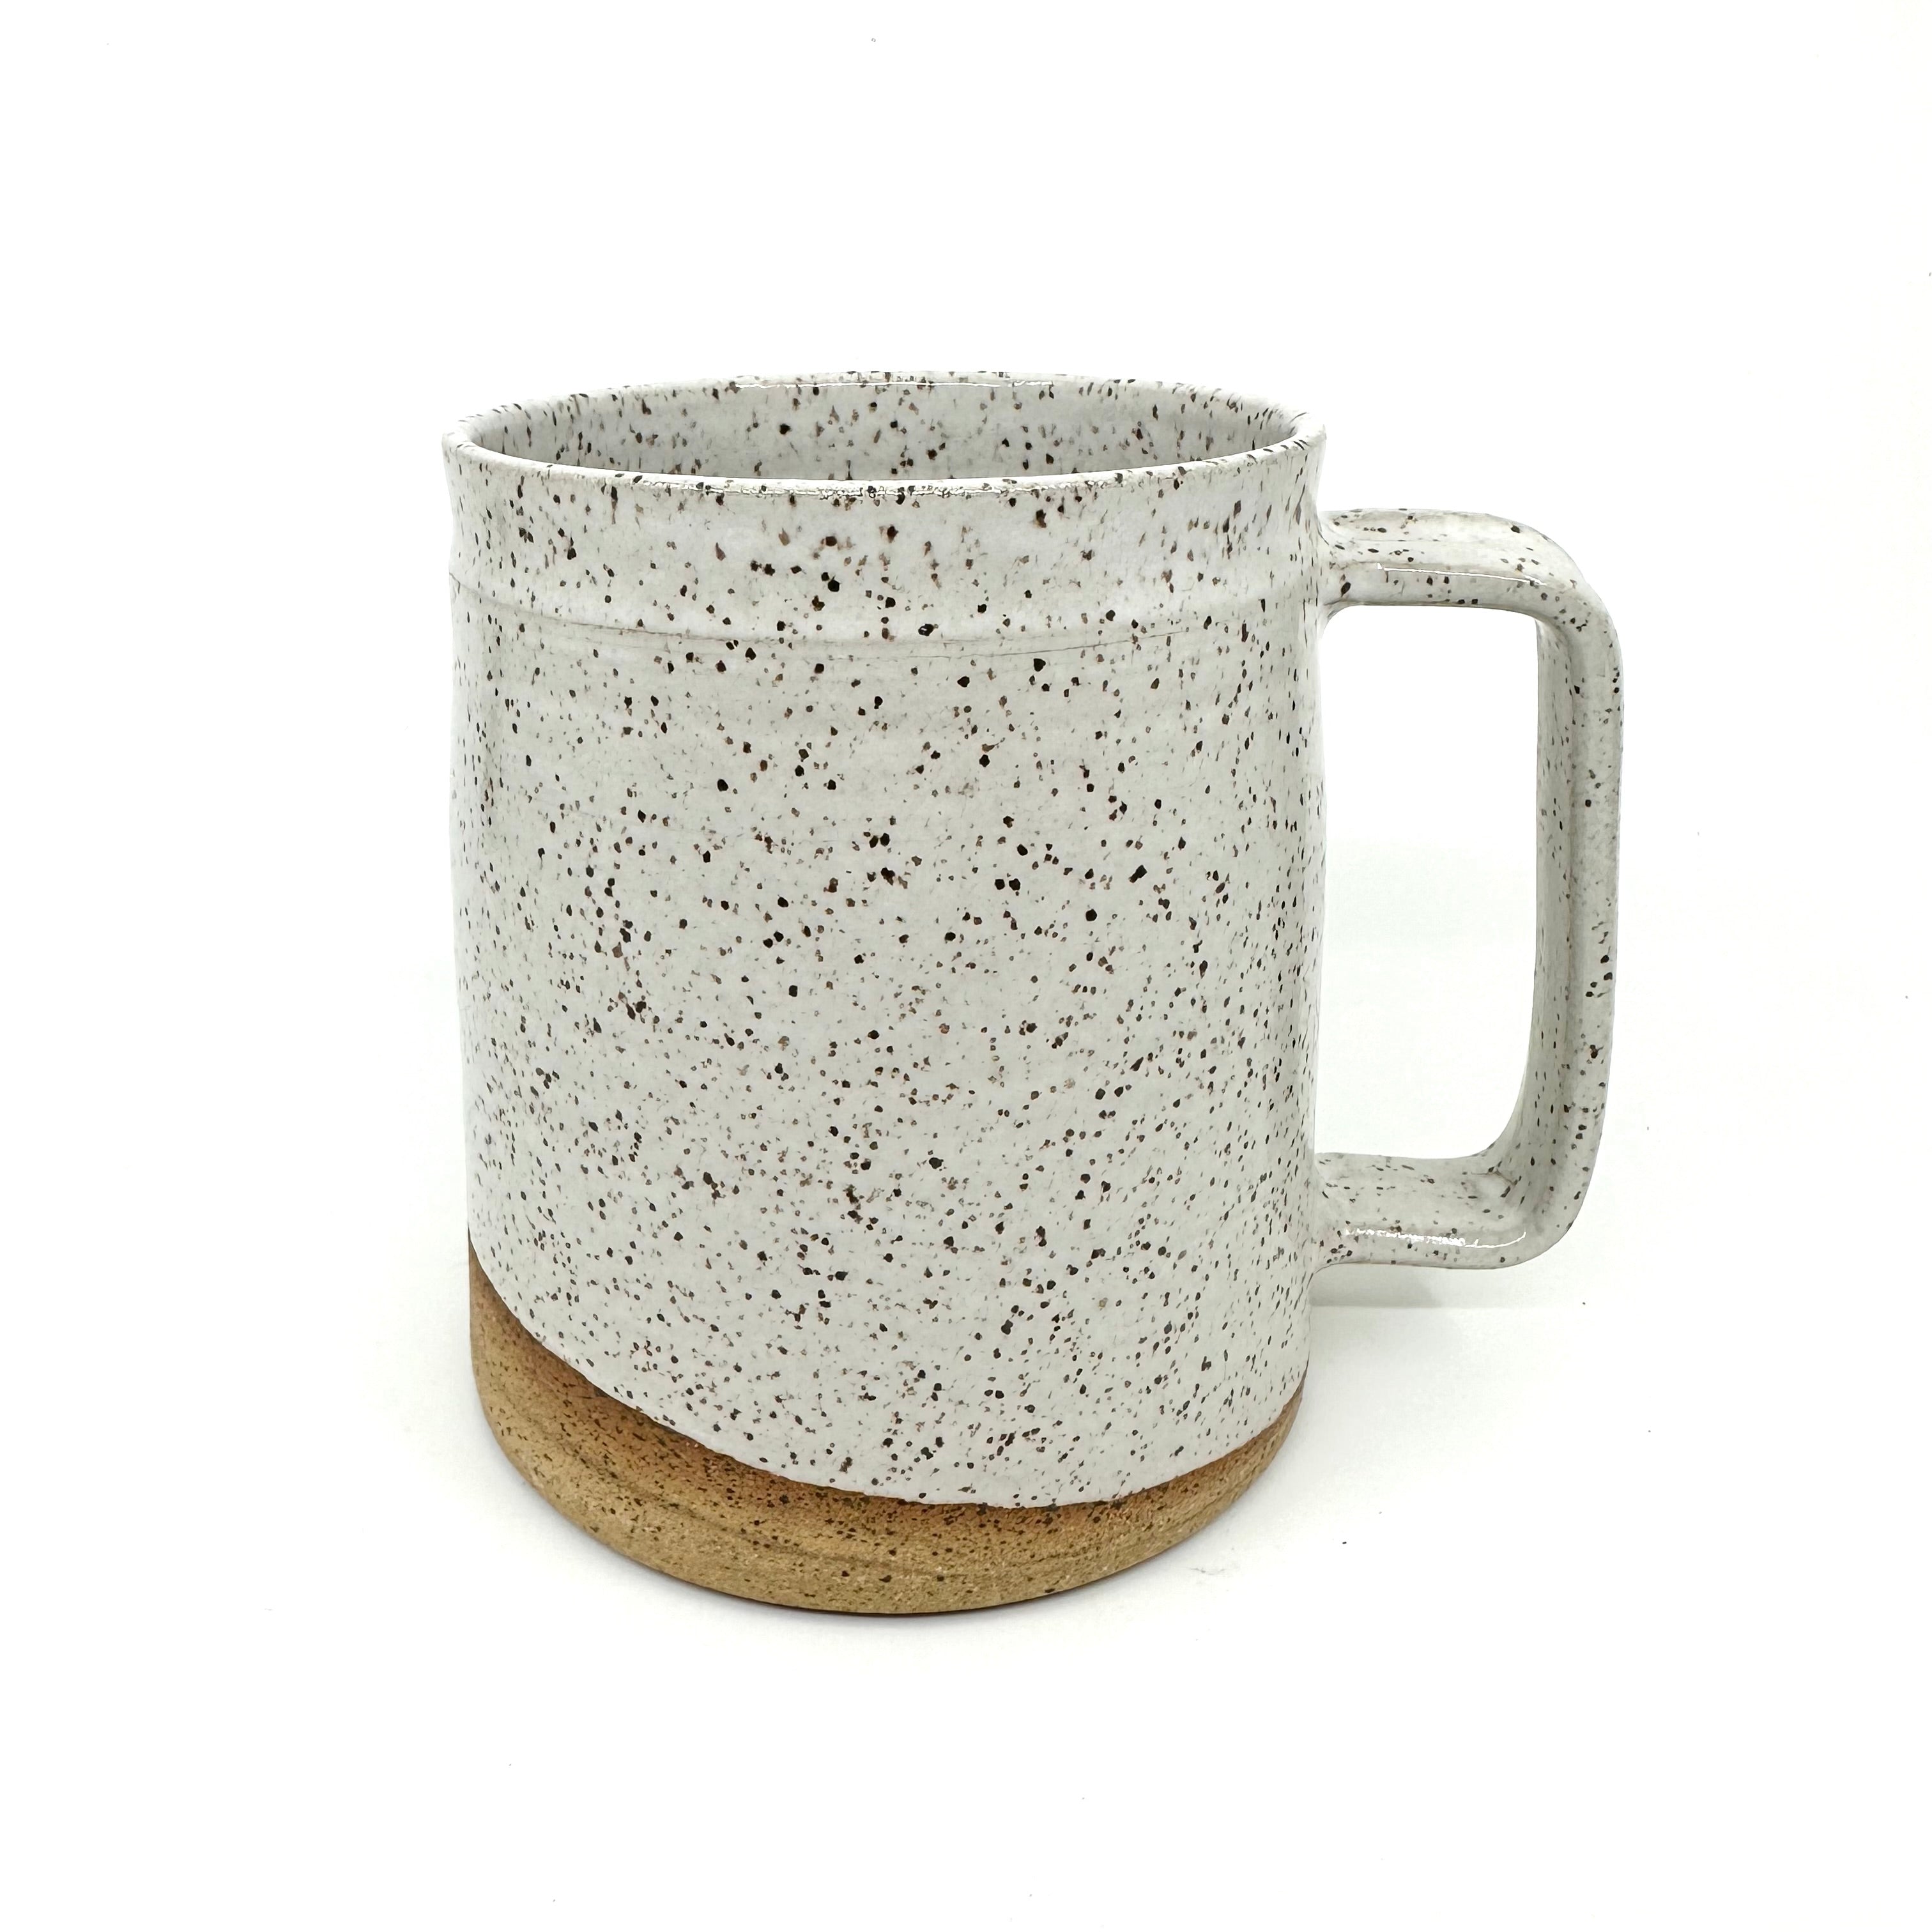 Barrel Mug - Speckled White